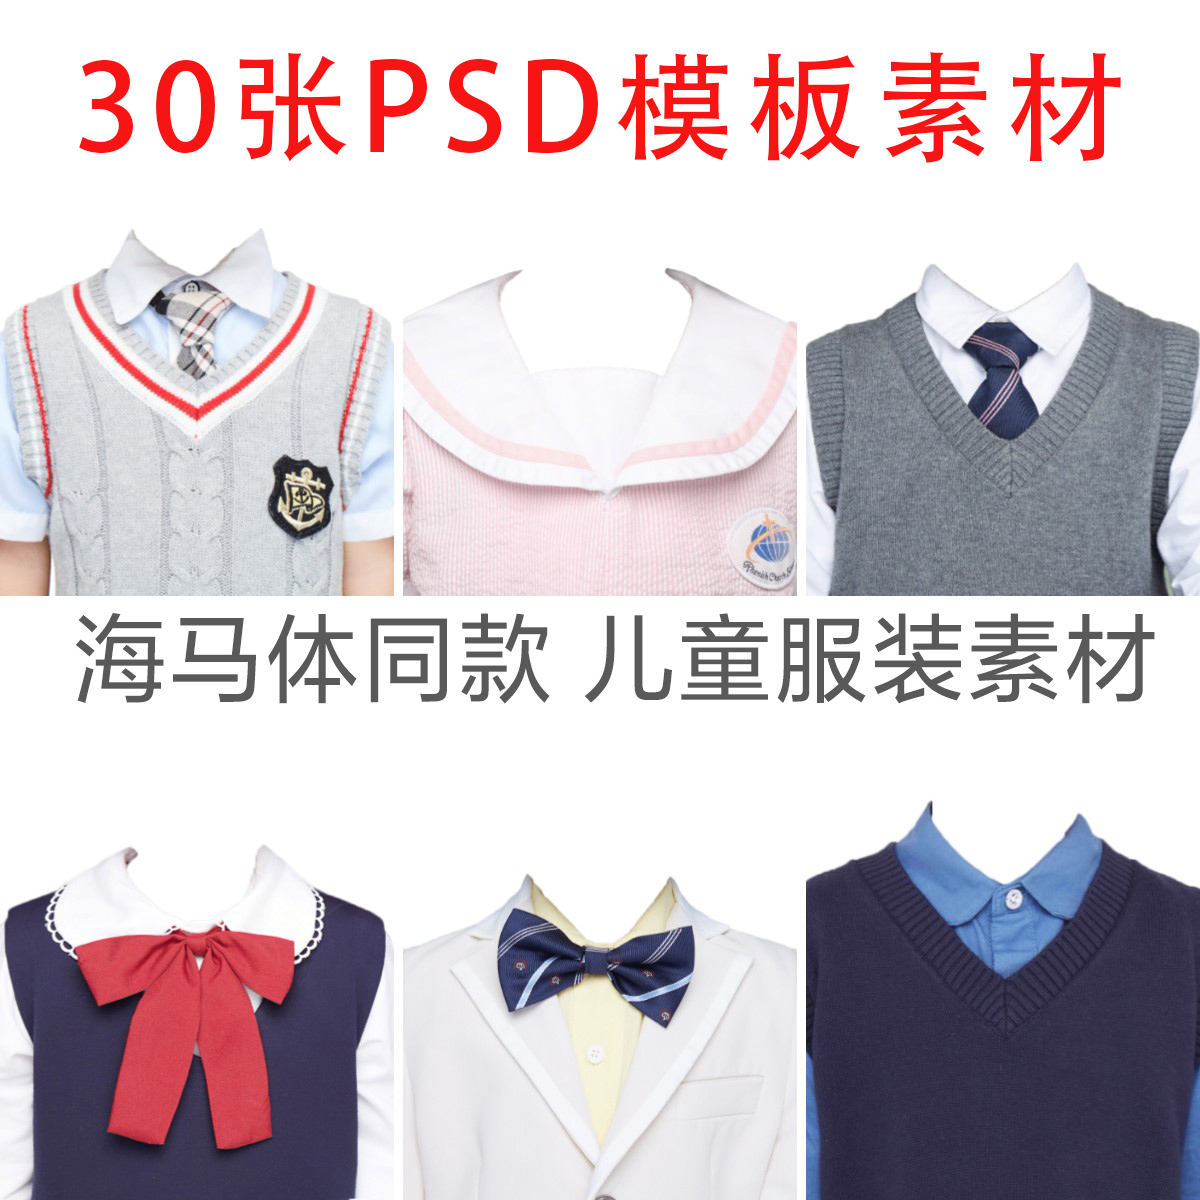 海马体天真蓝证件照同款儿童初中大童学生服装素材换衣服PSD模板